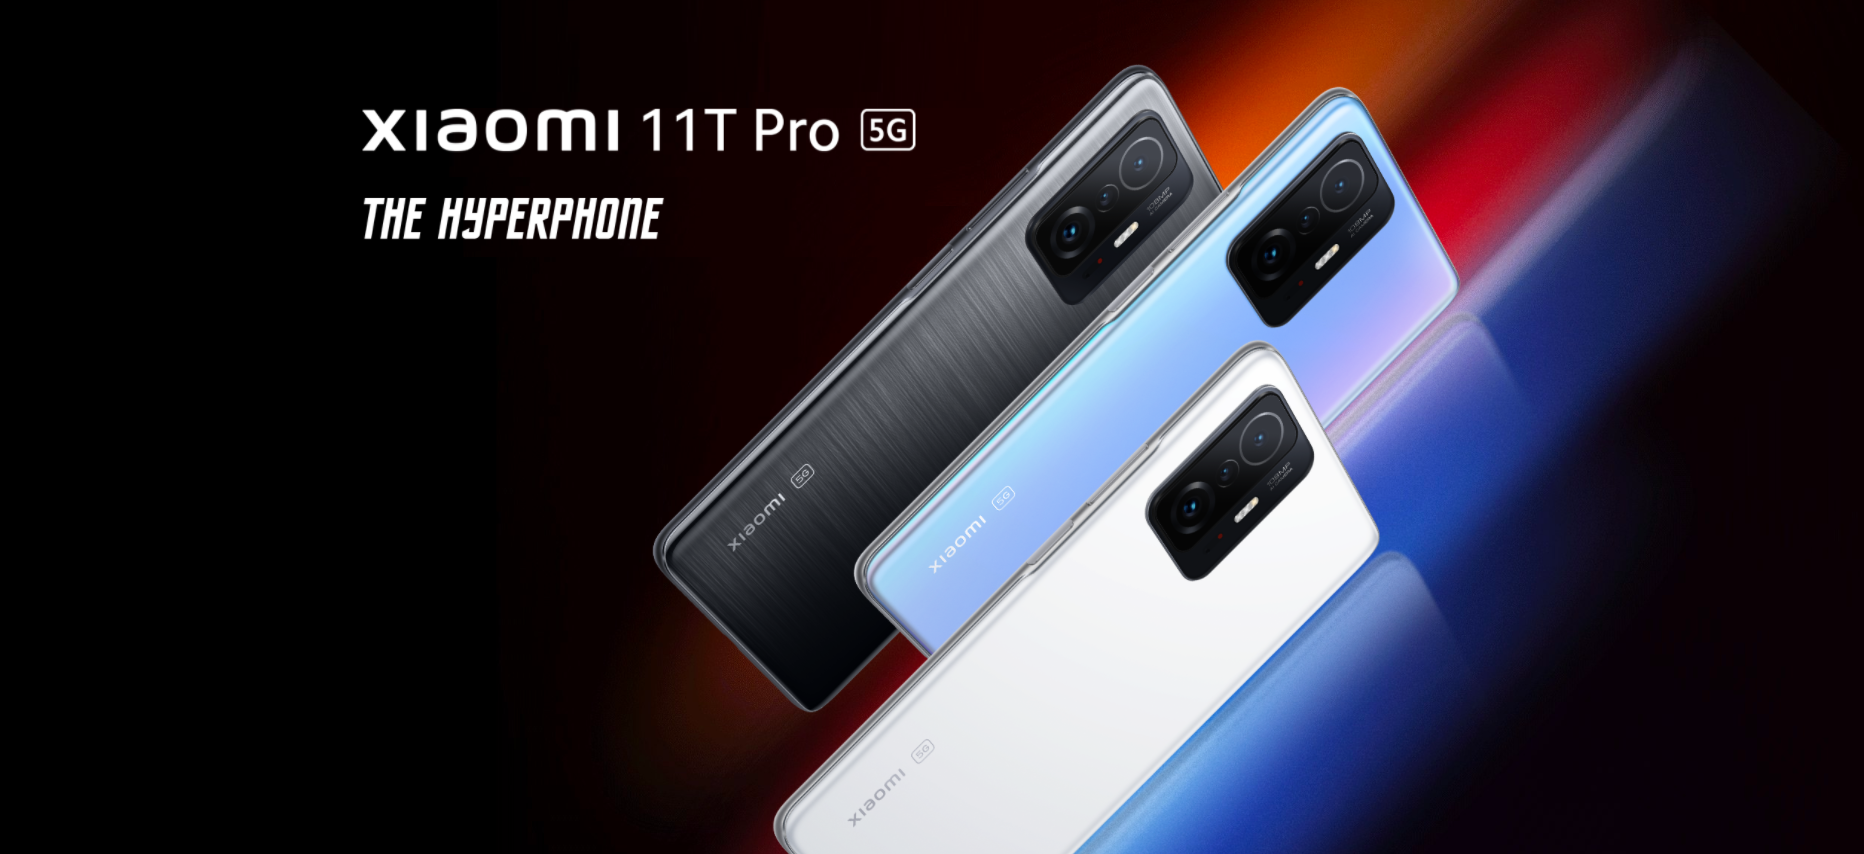 Xiaomi 11T Pro Hyperphone - Snapdragon 888, wyświetlacz 120Hz, ładowanie 120W i aparat 108MP w bardzo niskiej cenie